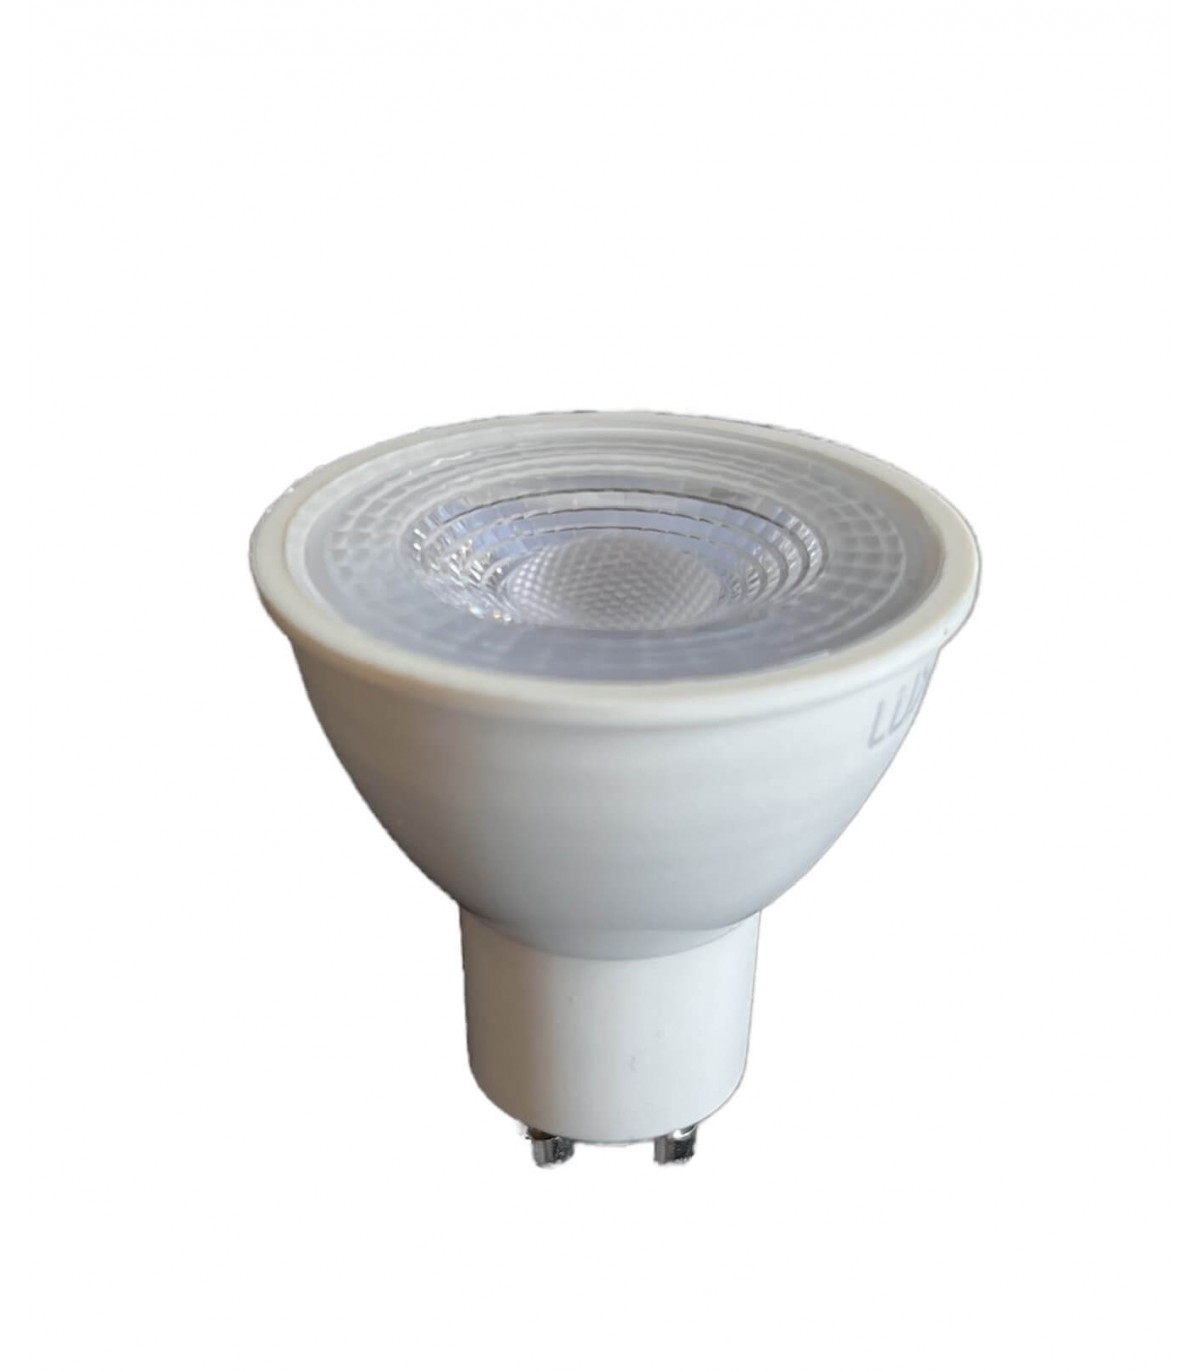 50 Spot LED encastrable complet blanc Fixe avec Ampoule GU10 7W Dimmable